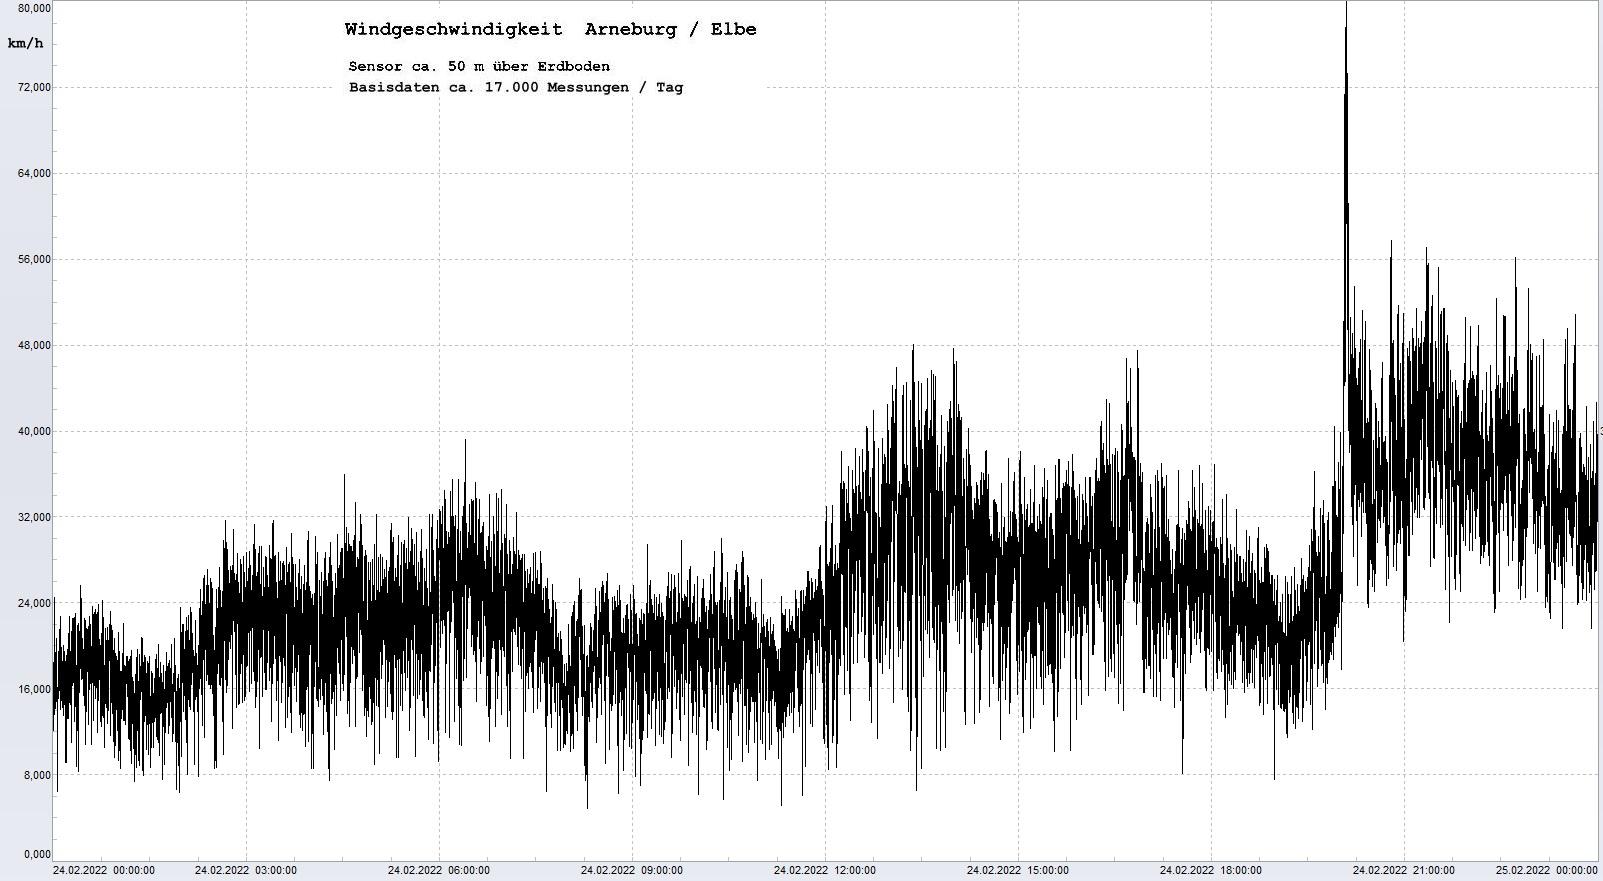 Arneburg Tages-Diagramm Winddaten, 24.02.2022
  Diagramm, Sensor auf Gebude, ca. 50 m ber Erdboden, Basis: 5s-Aufzeichnung